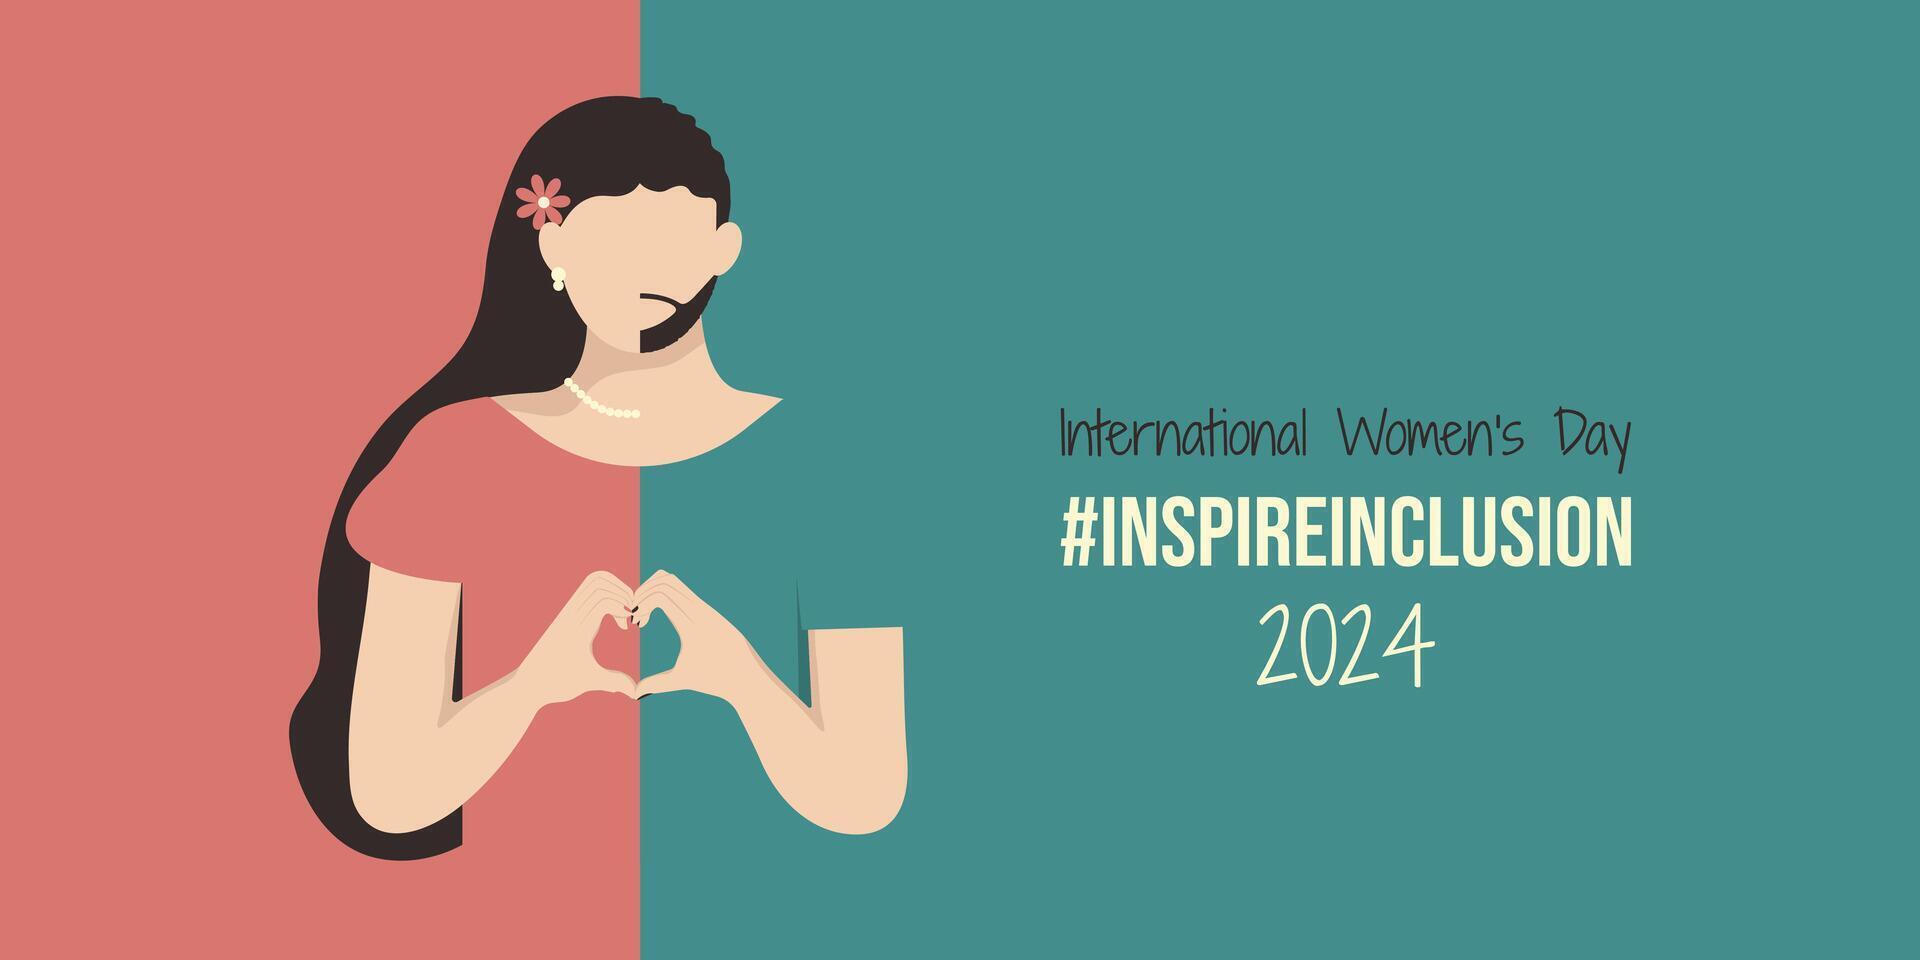 Internationale vrouwen dag banier van inspireren inclusie 2024. persoon vouwen handen met hart voor iwd. minimalistische illustratie met inspirereninclusie leuze en meisje identificeren net zo hij ze zij. vector